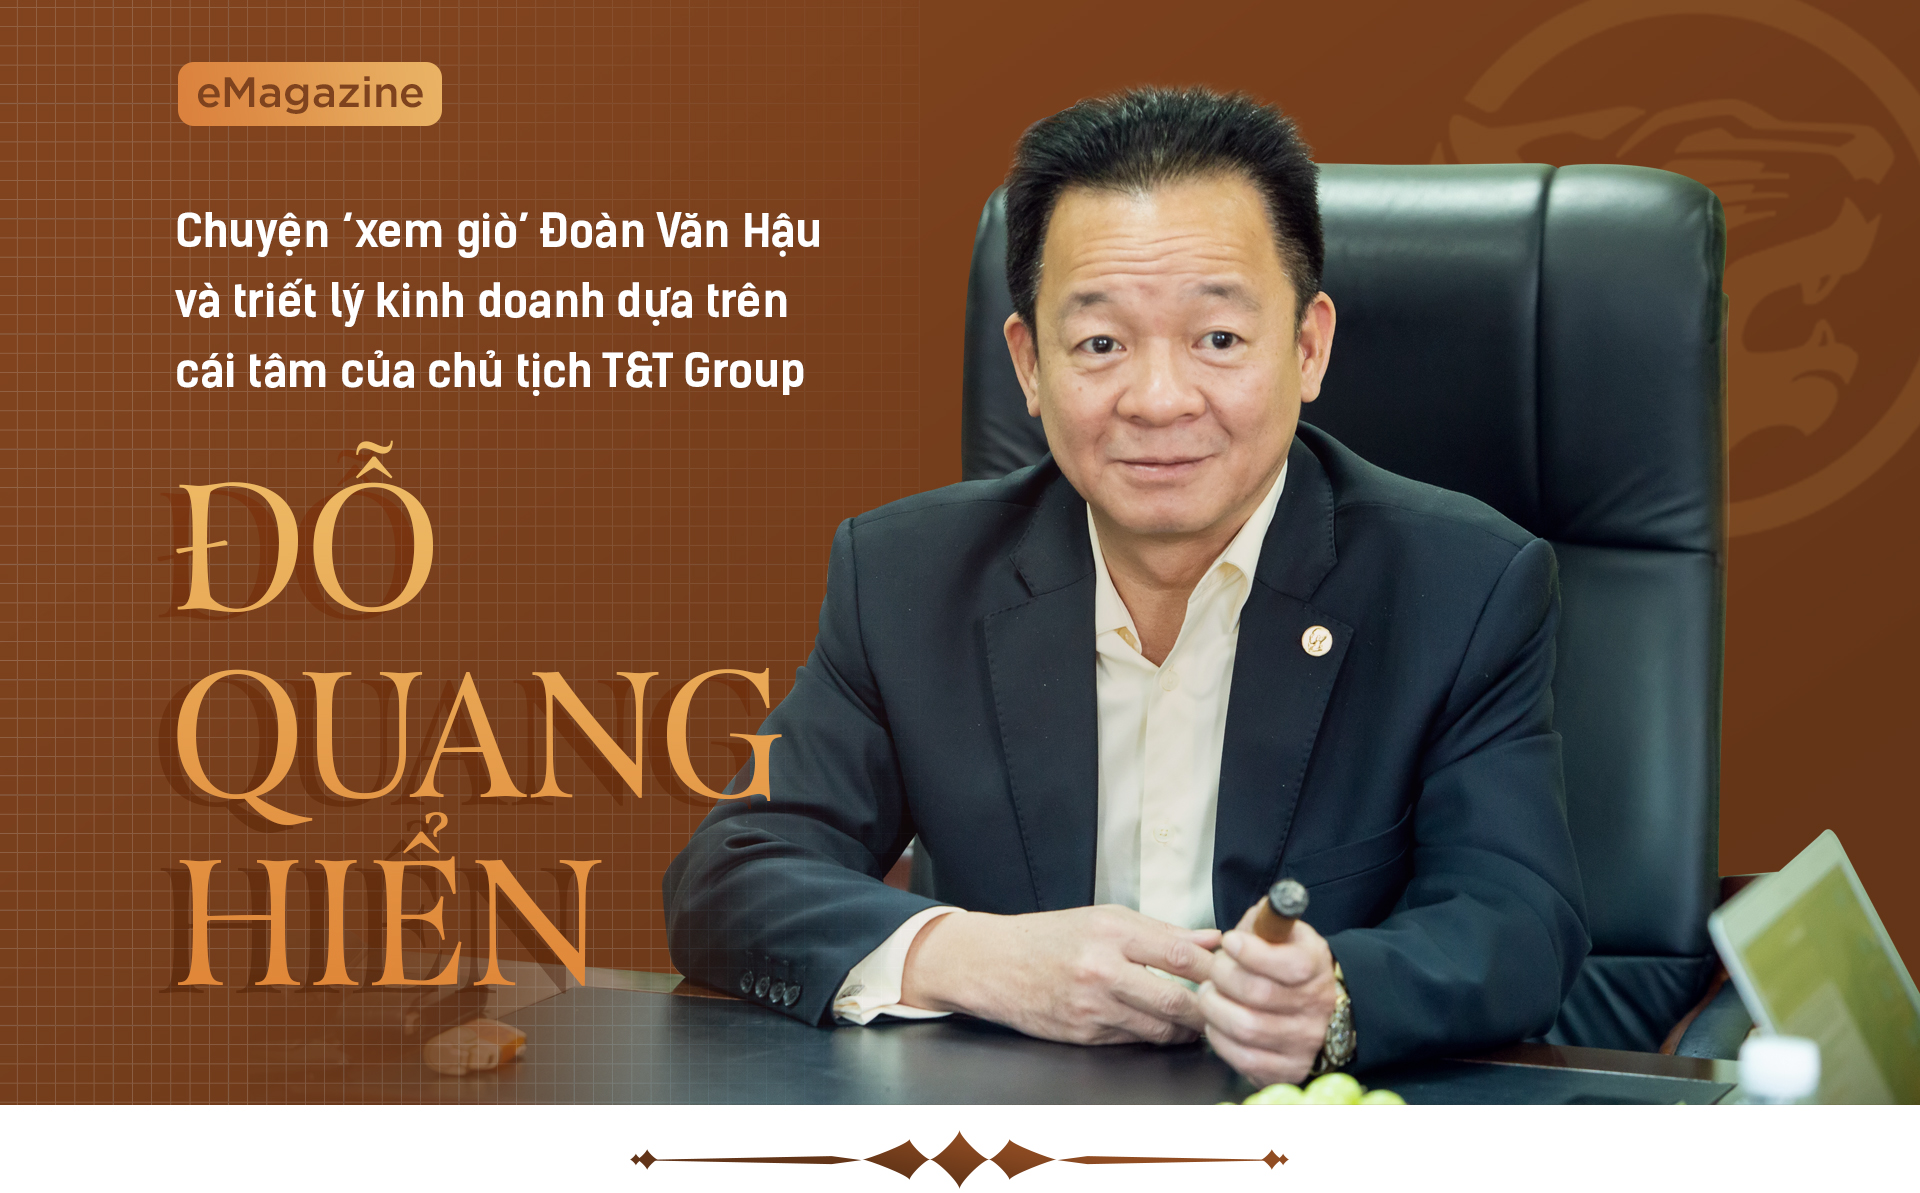 Chuyện ‘xem giò’ Đoàn Văn Hậu và triết lý kinh doanh dựa trên cái tâm của chủ tịch T&T Group Đỗ Quang Hiển